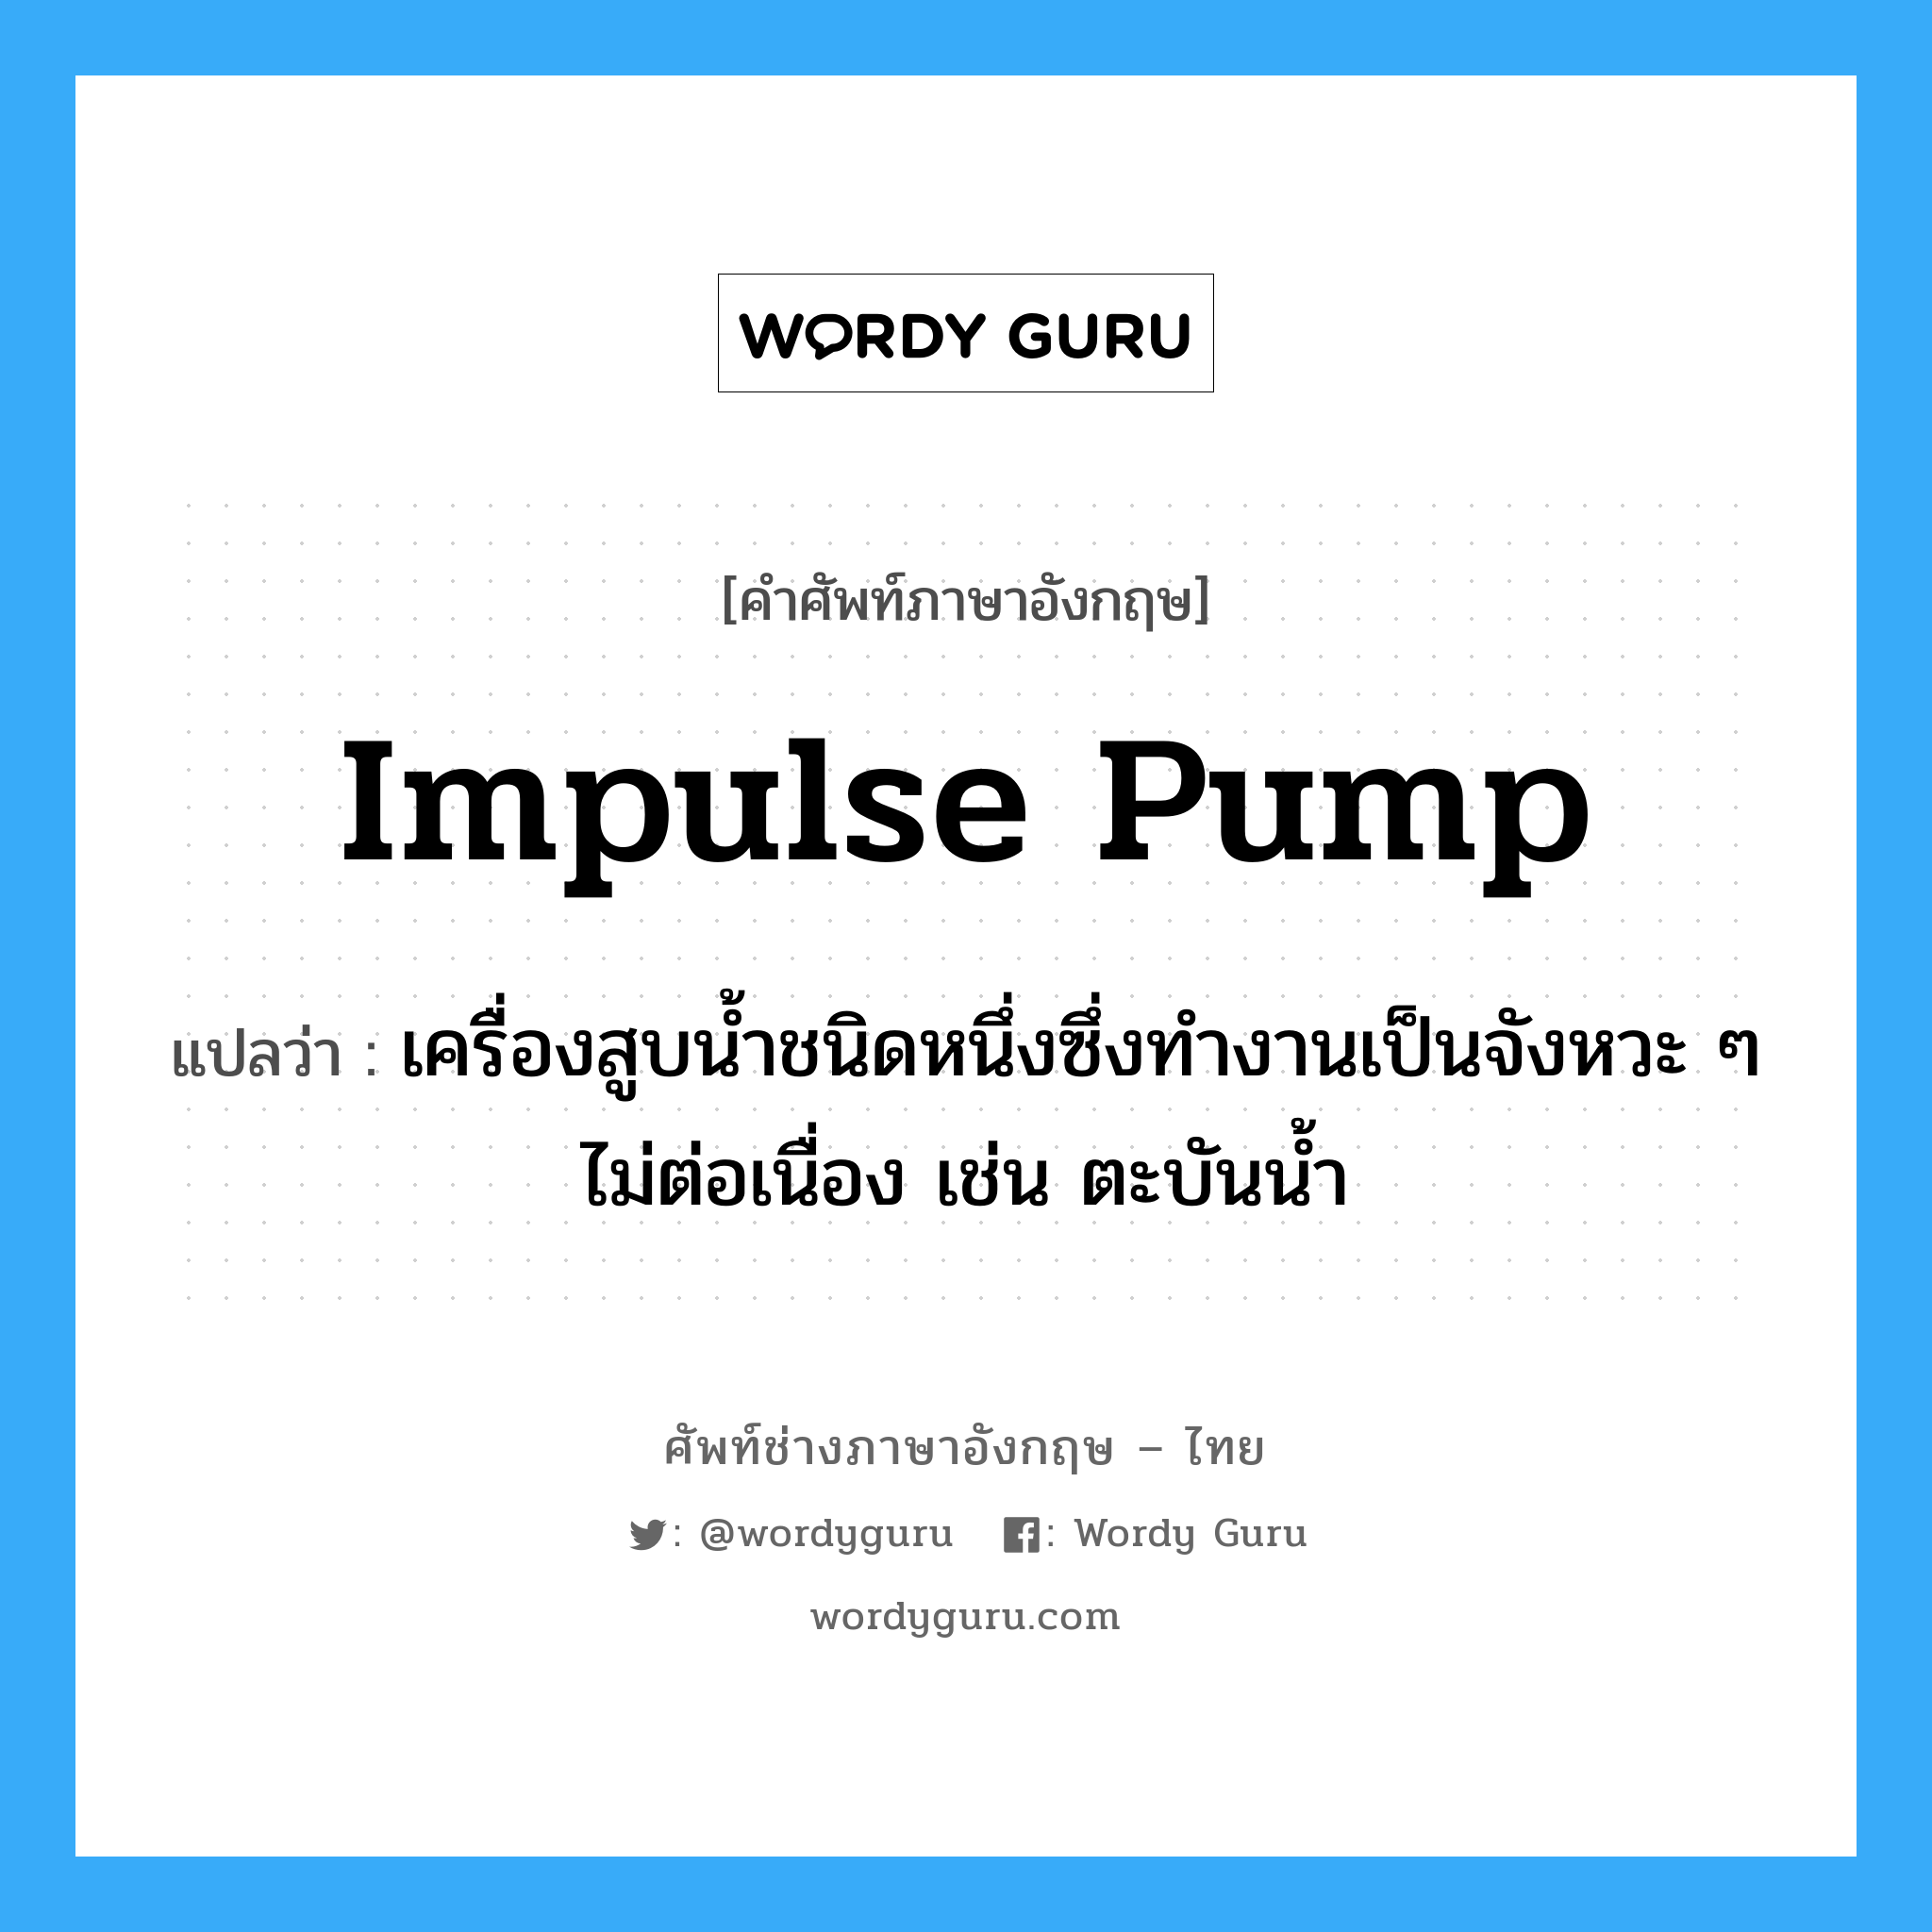 impulse pump แปลว่า?, คำศัพท์ช่างภาษาอังกฤษ - ไทย impulse pump คำศัพท์ภาษาอังกฤษ impulse pump แปลว่า เครื่องสูบน้ำชนิดหนึ่งซึ่งทำงานเป็นจังหวะ ๆ ไม่ต่อเนื่อง เช่น ตะบันน้ำ